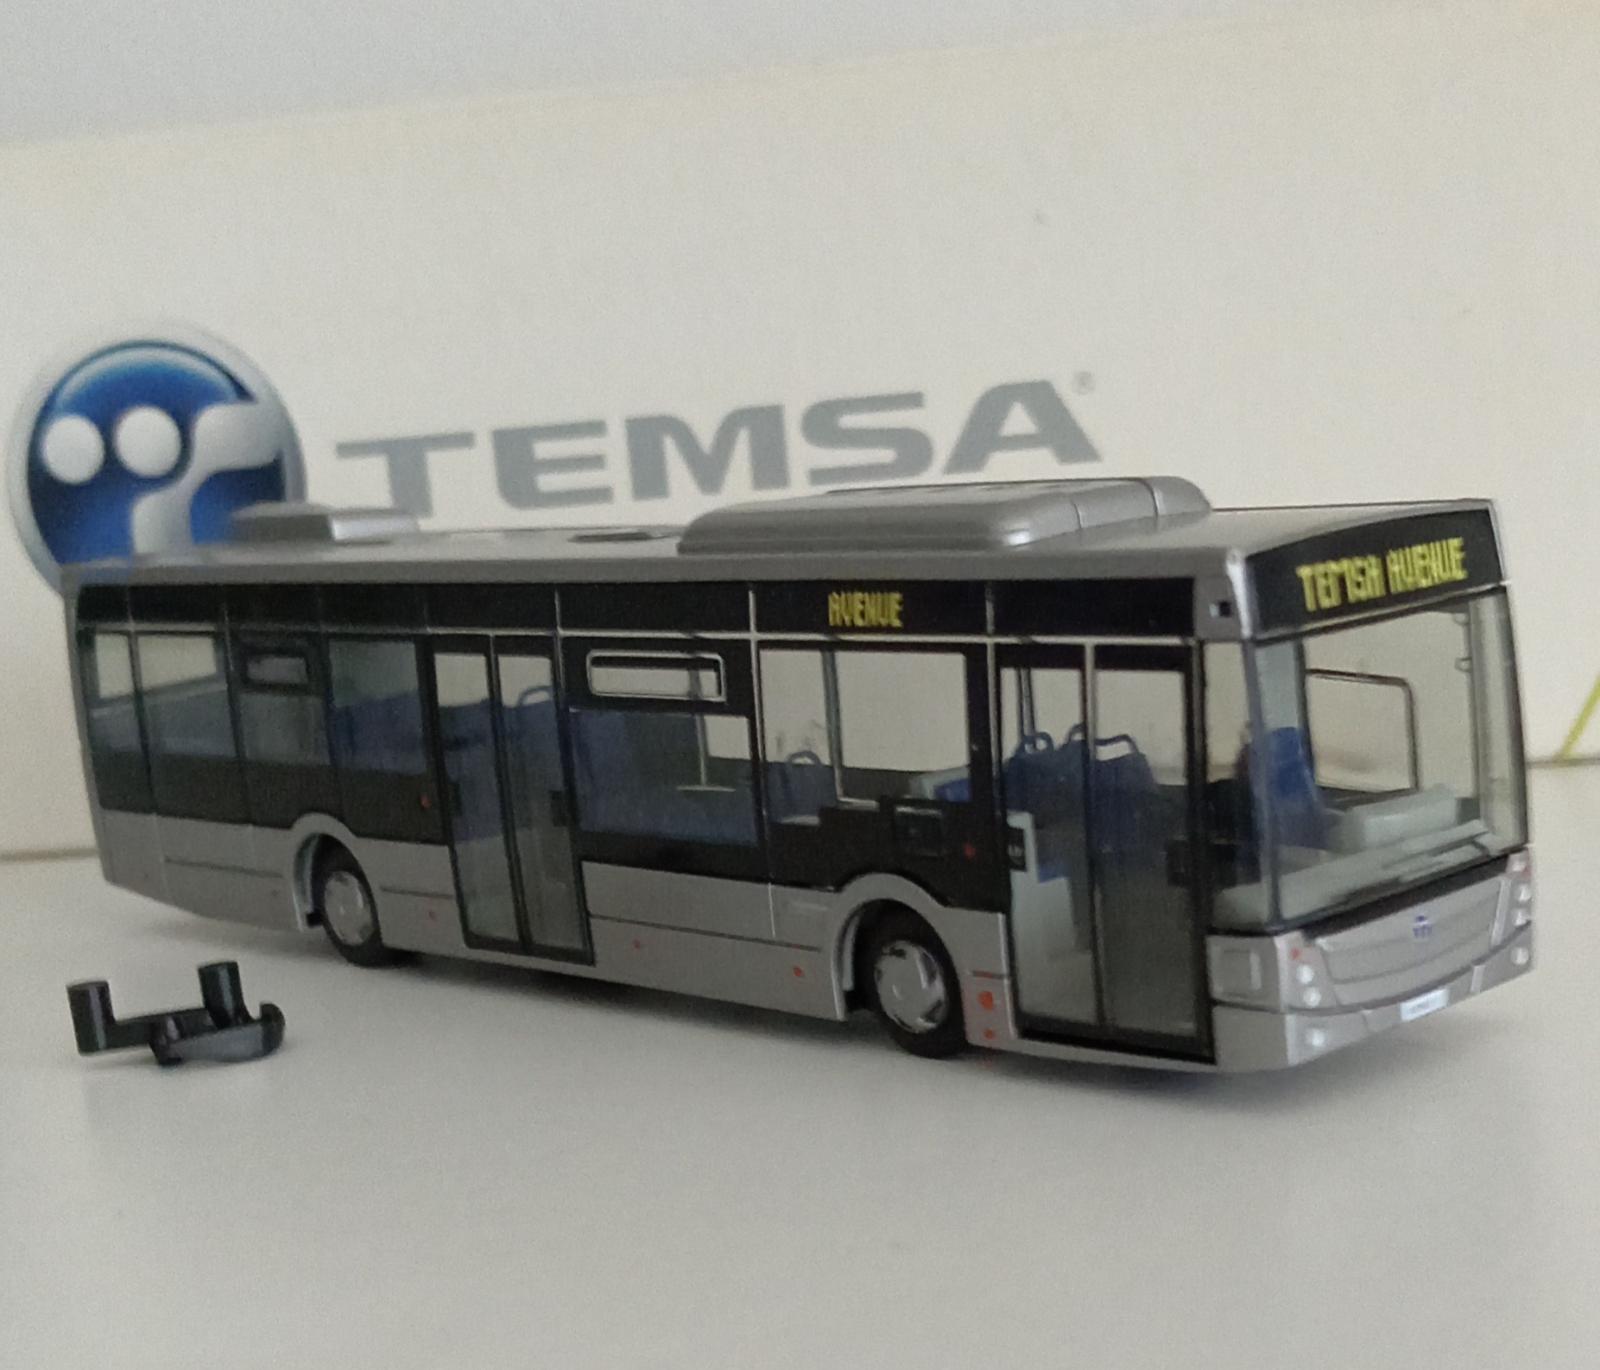 Predám model autobusu Temza - Modely automobilov